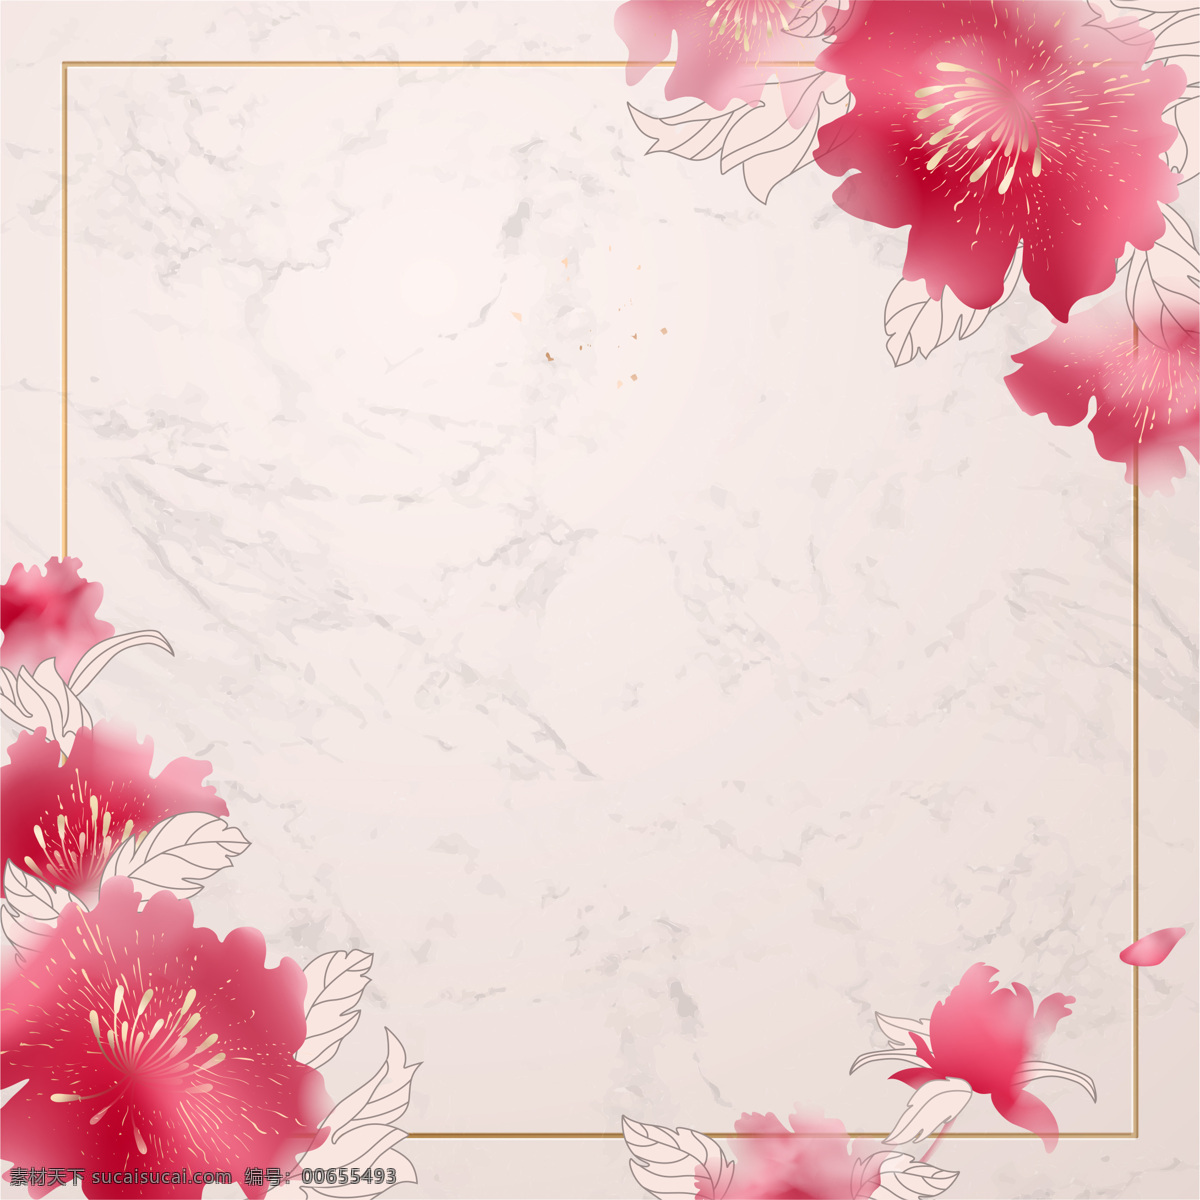 手绘 水墨 粉色 扁平 春天 背景 边框 花朵 线条 叶子